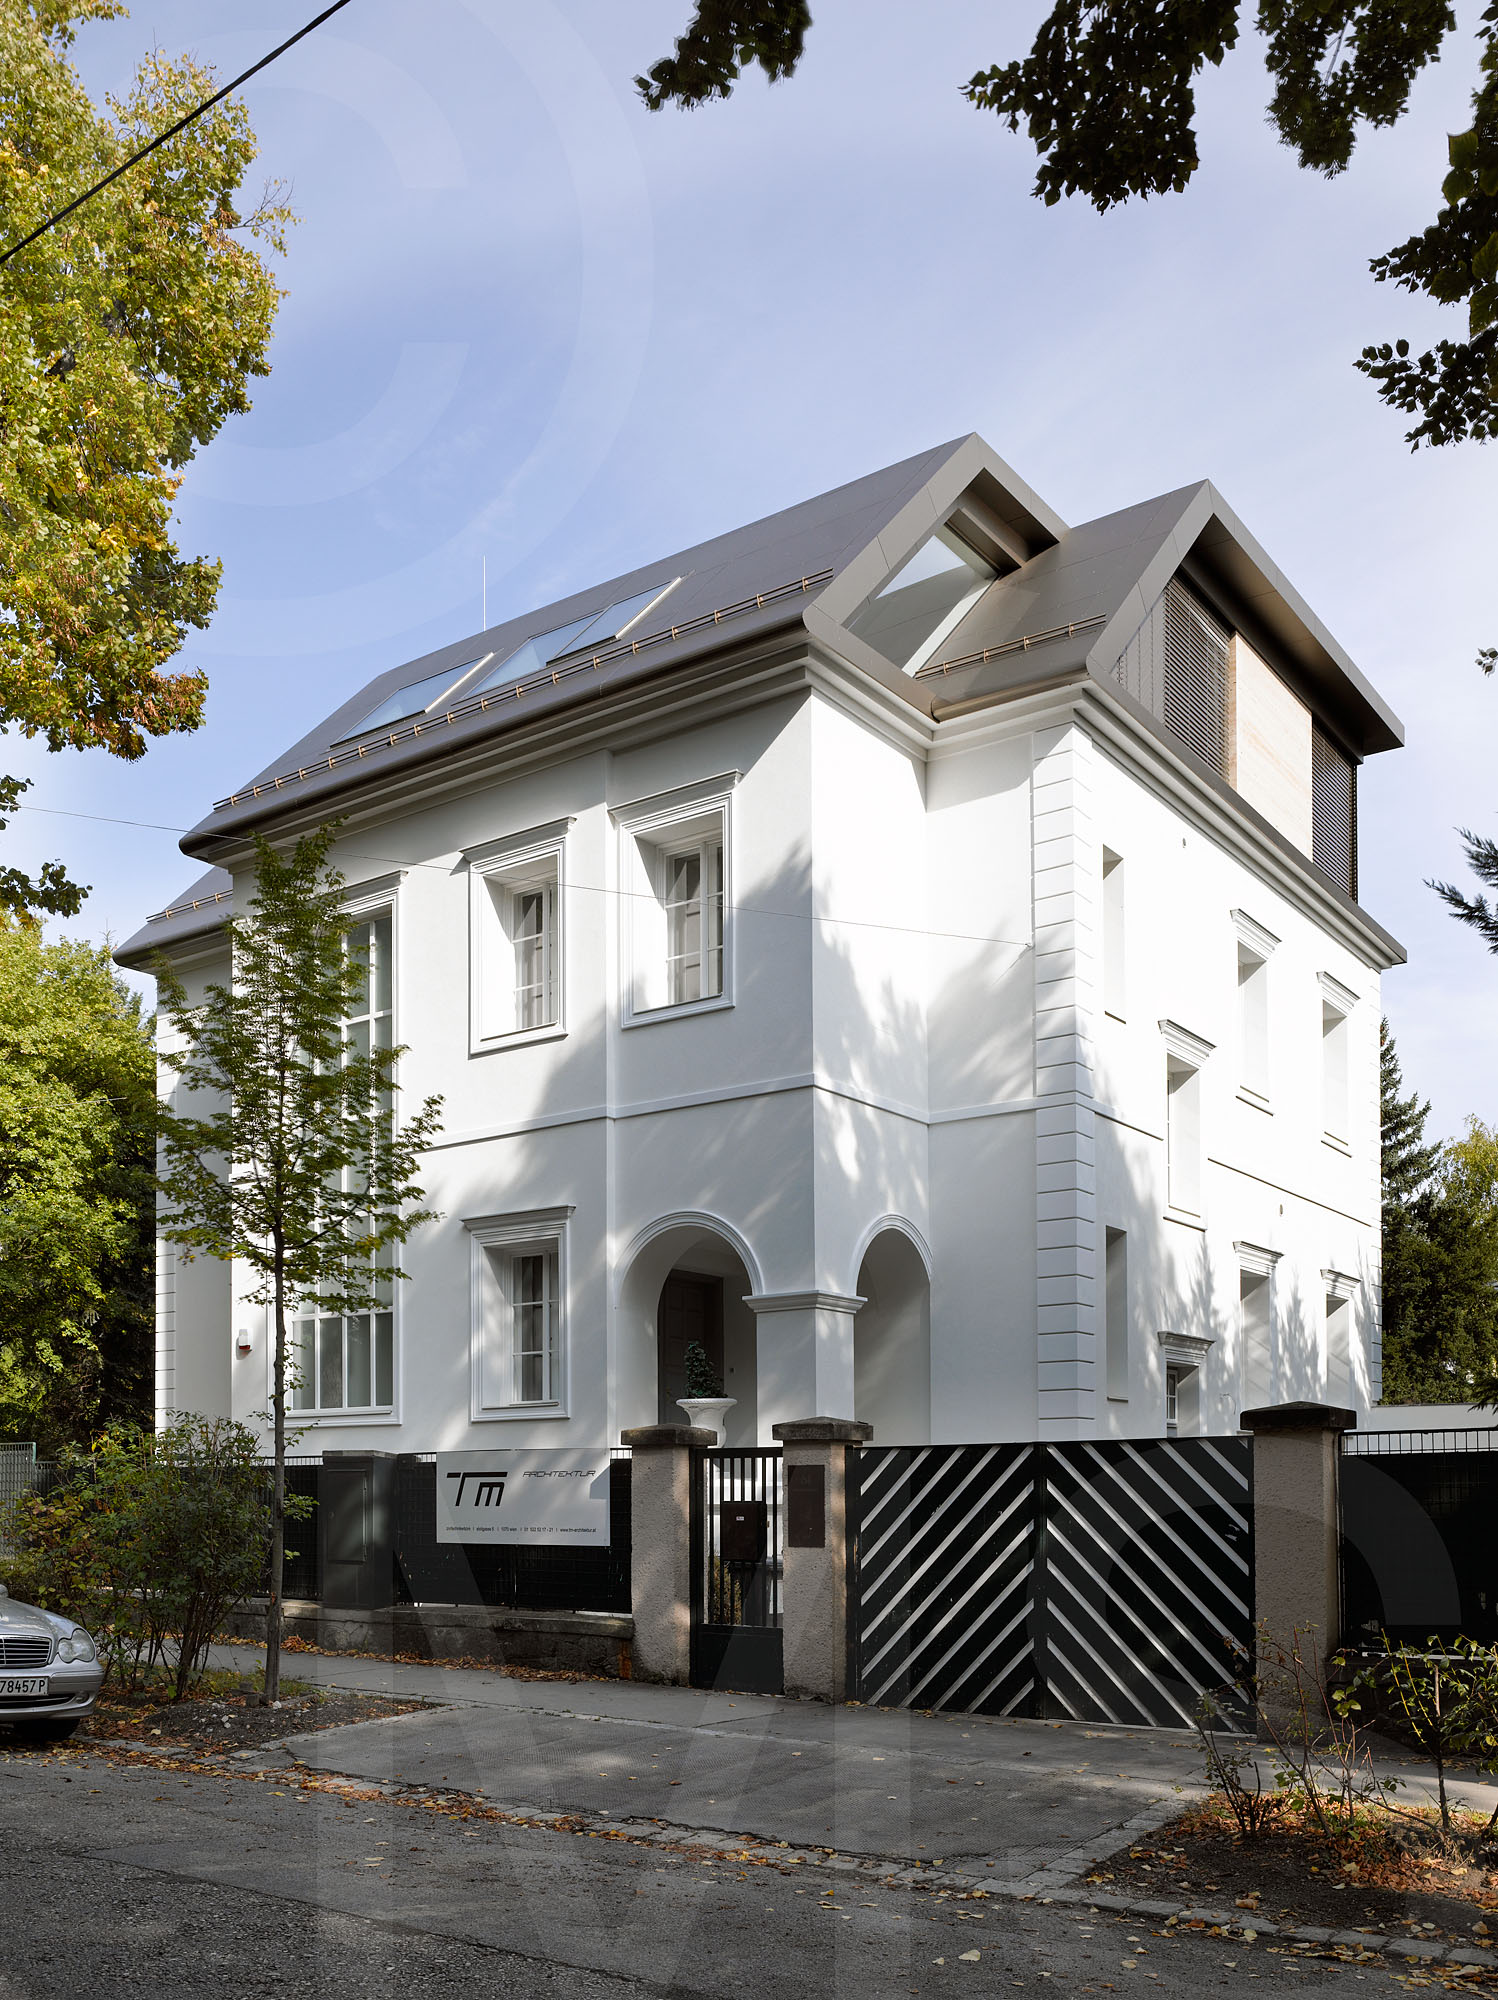  Villa Cottagegasse 1190 Wien  TM Architektur 